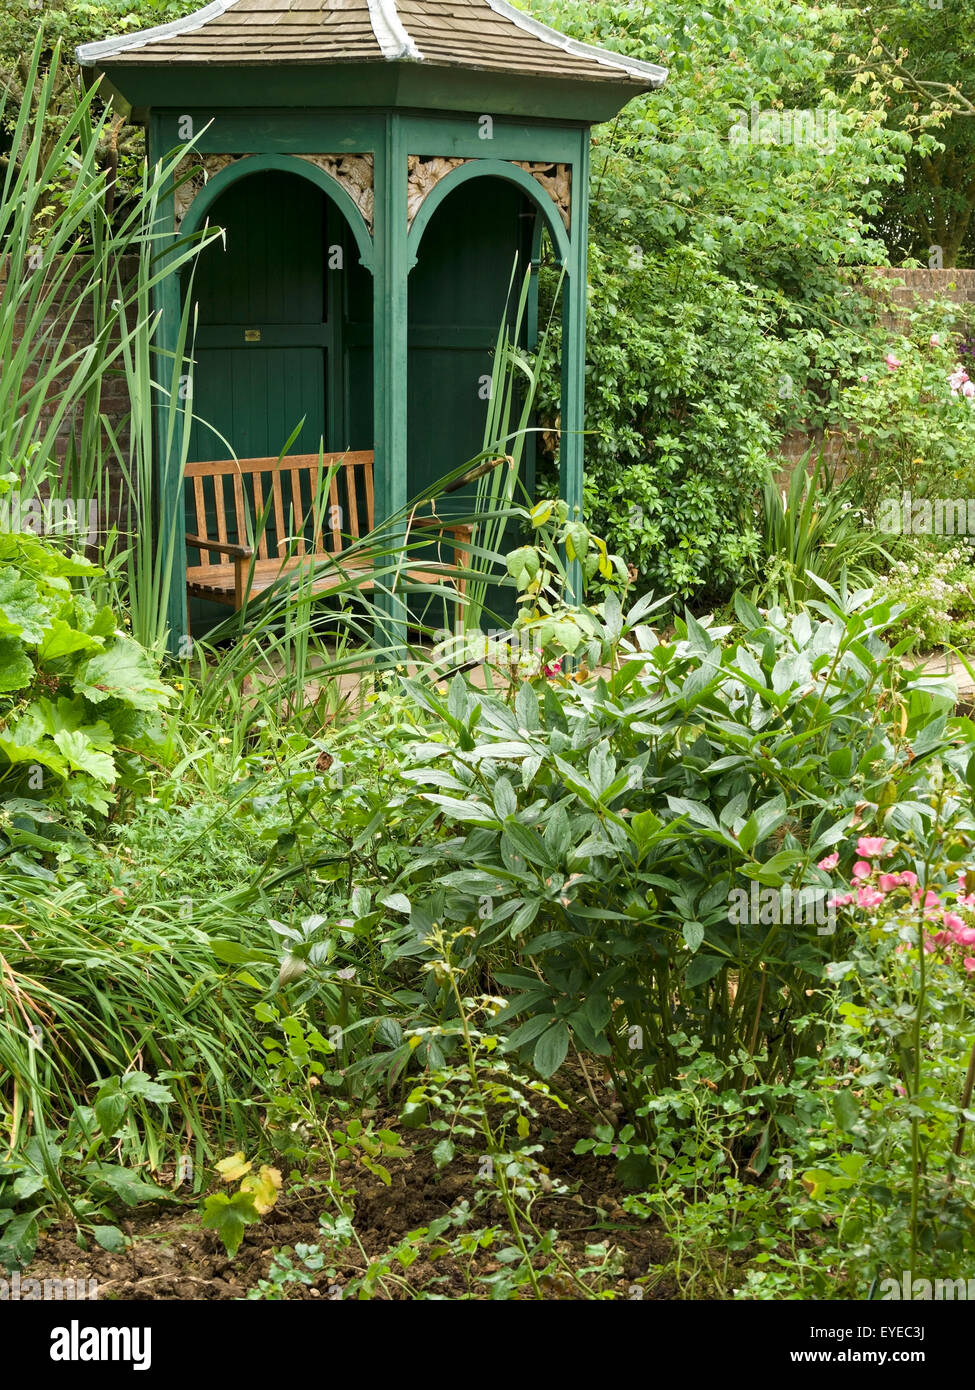 Kunstvoll gewölbte, aus Holz, Garten Pavillon Laube unter überwuchert, grünes Laub, Barnsdale Gärten, Rutland, England, UK. Stockfoto